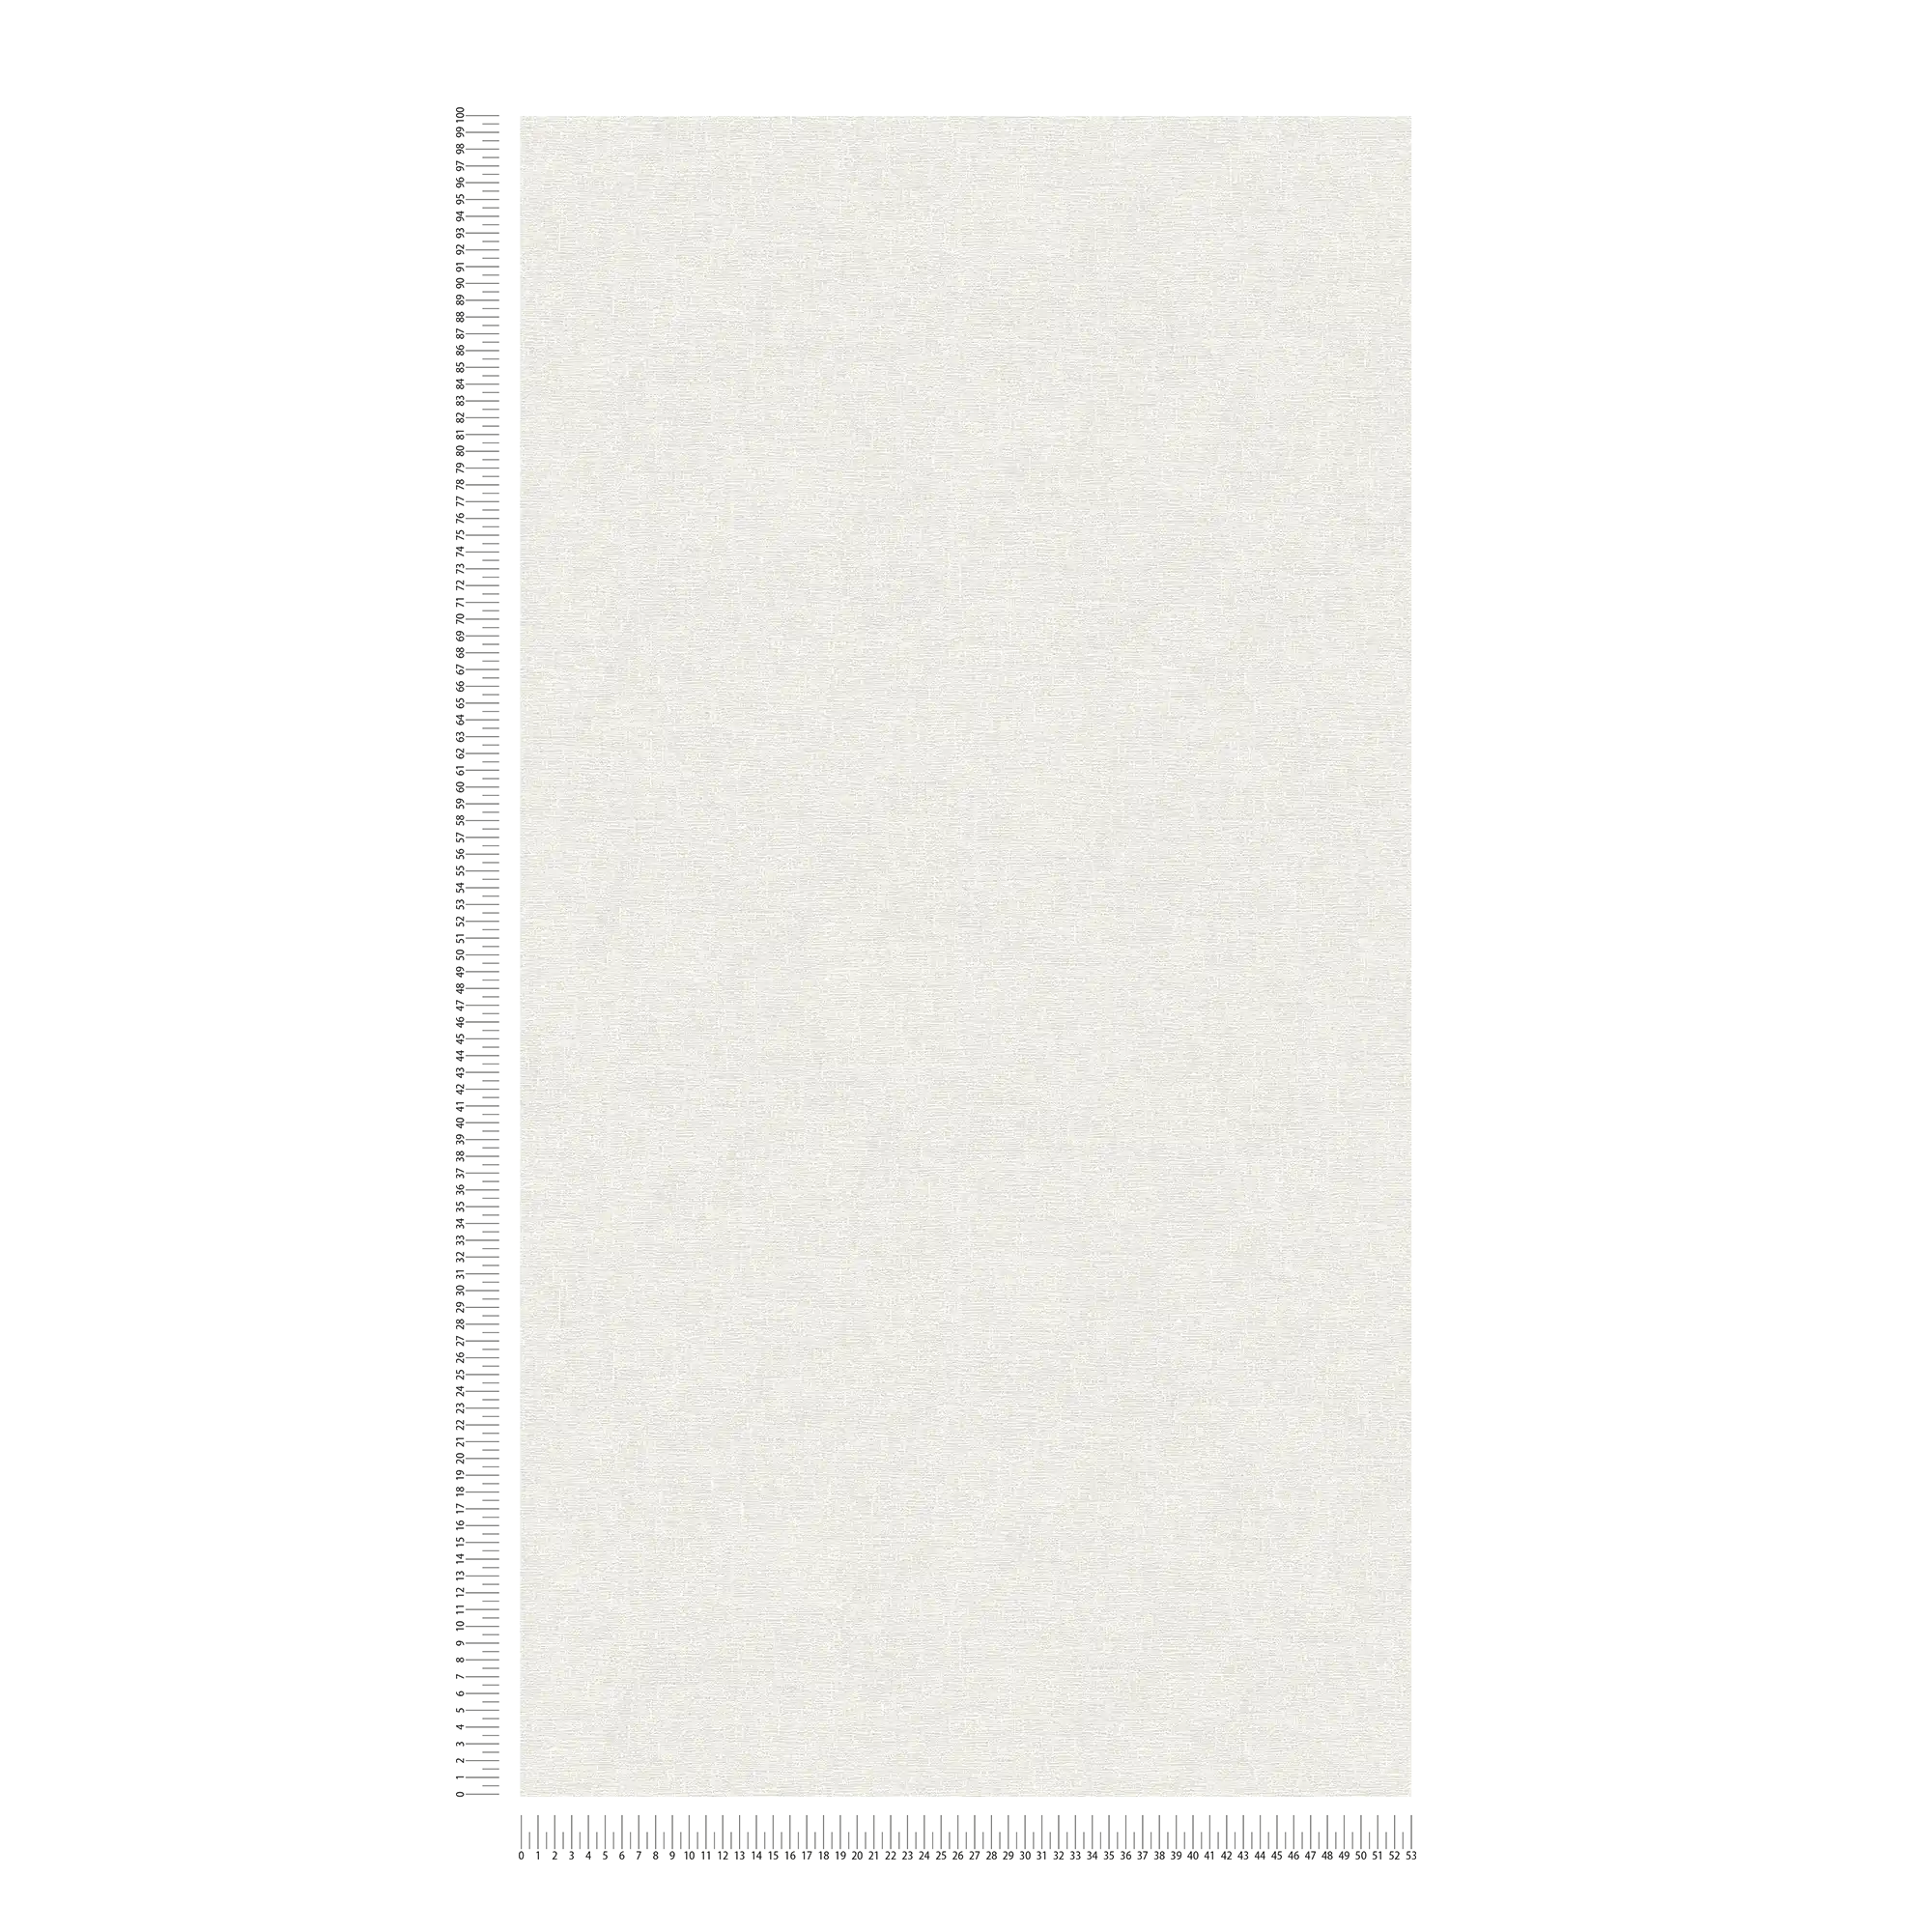             Einfarbige Tapete dunkles Weiß mit dezentem Strukturmuster
        